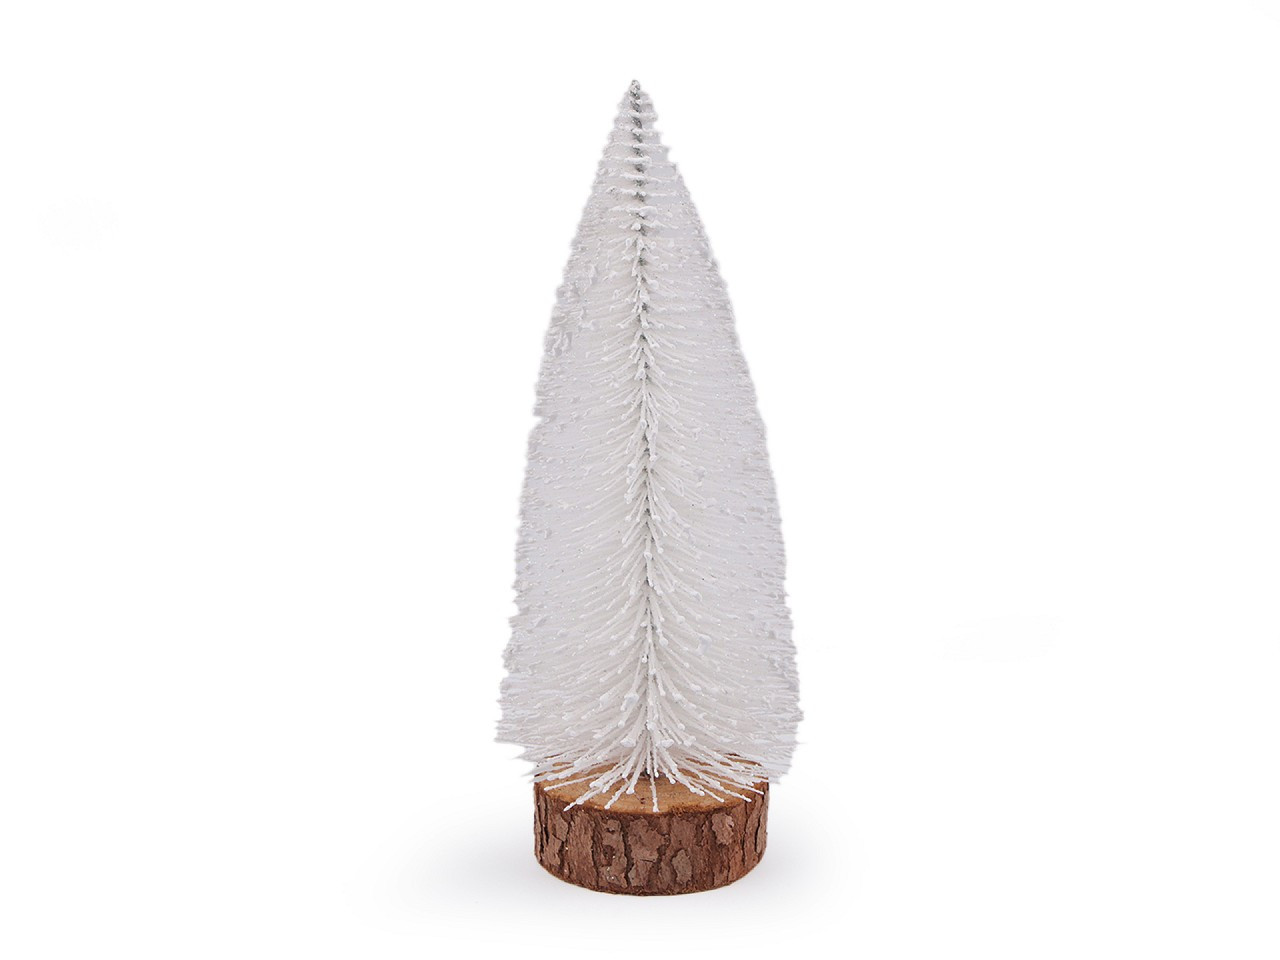 Dekorace vánoční stromeček, barva 1 bílá glitry